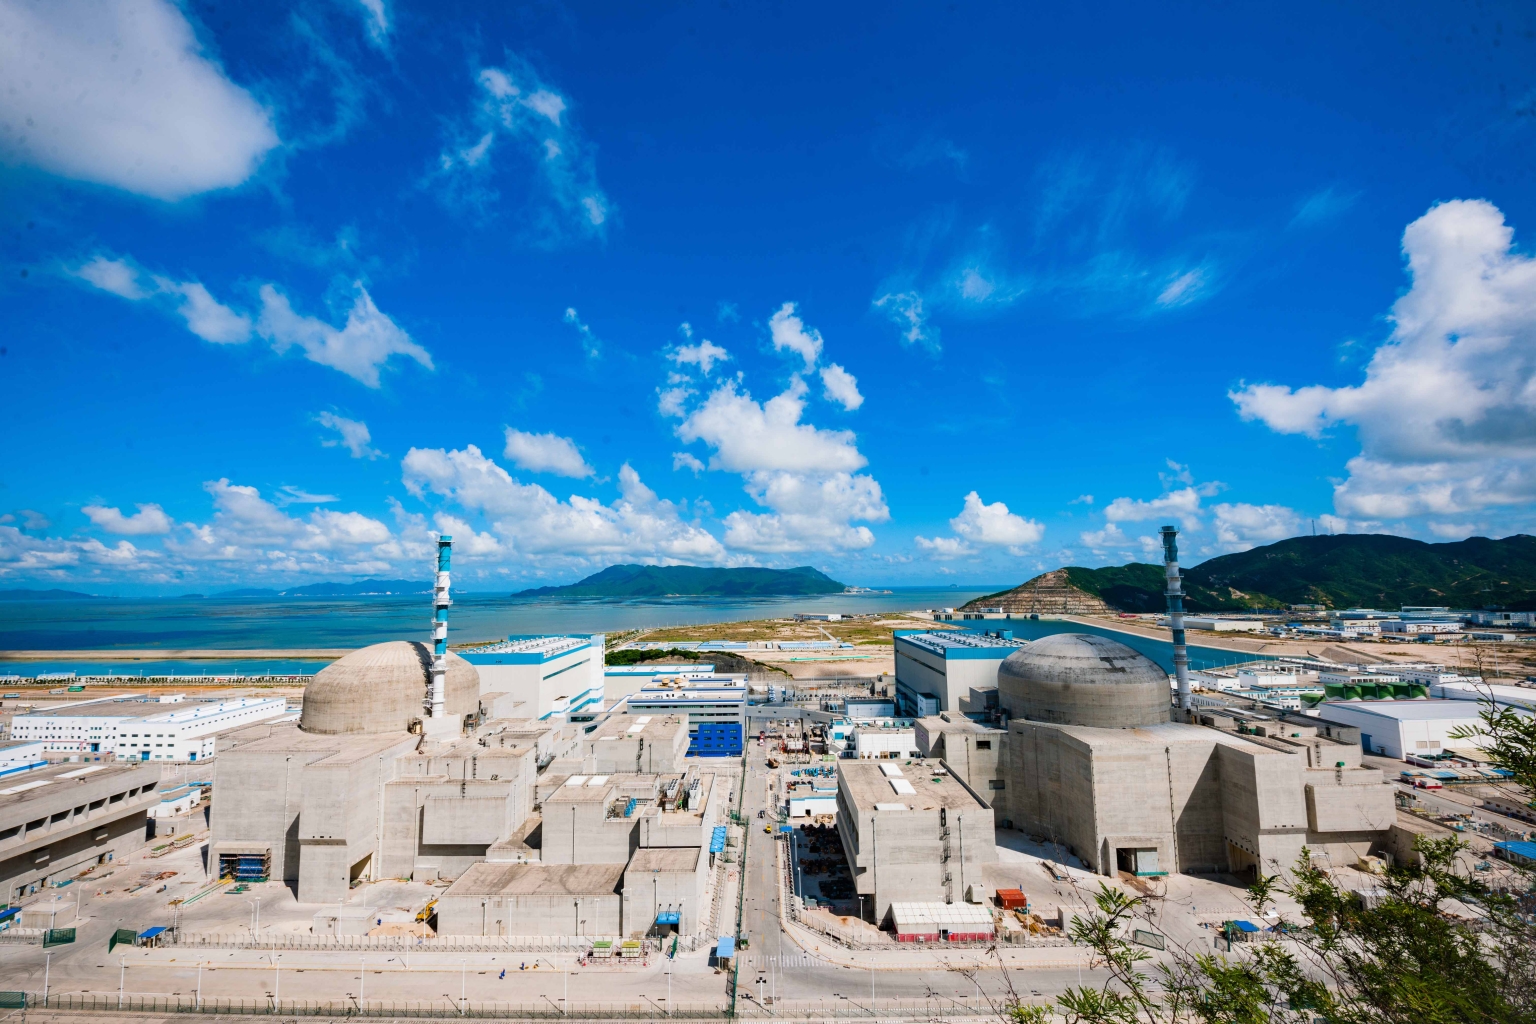 Deux réacteurs EPR produisent de l’électricité depuis fin juin 2019 sur le site de Taishan, dans la province chinoise de Guangdong. Ils offrent à eux deux une puissance de 3300 MW.